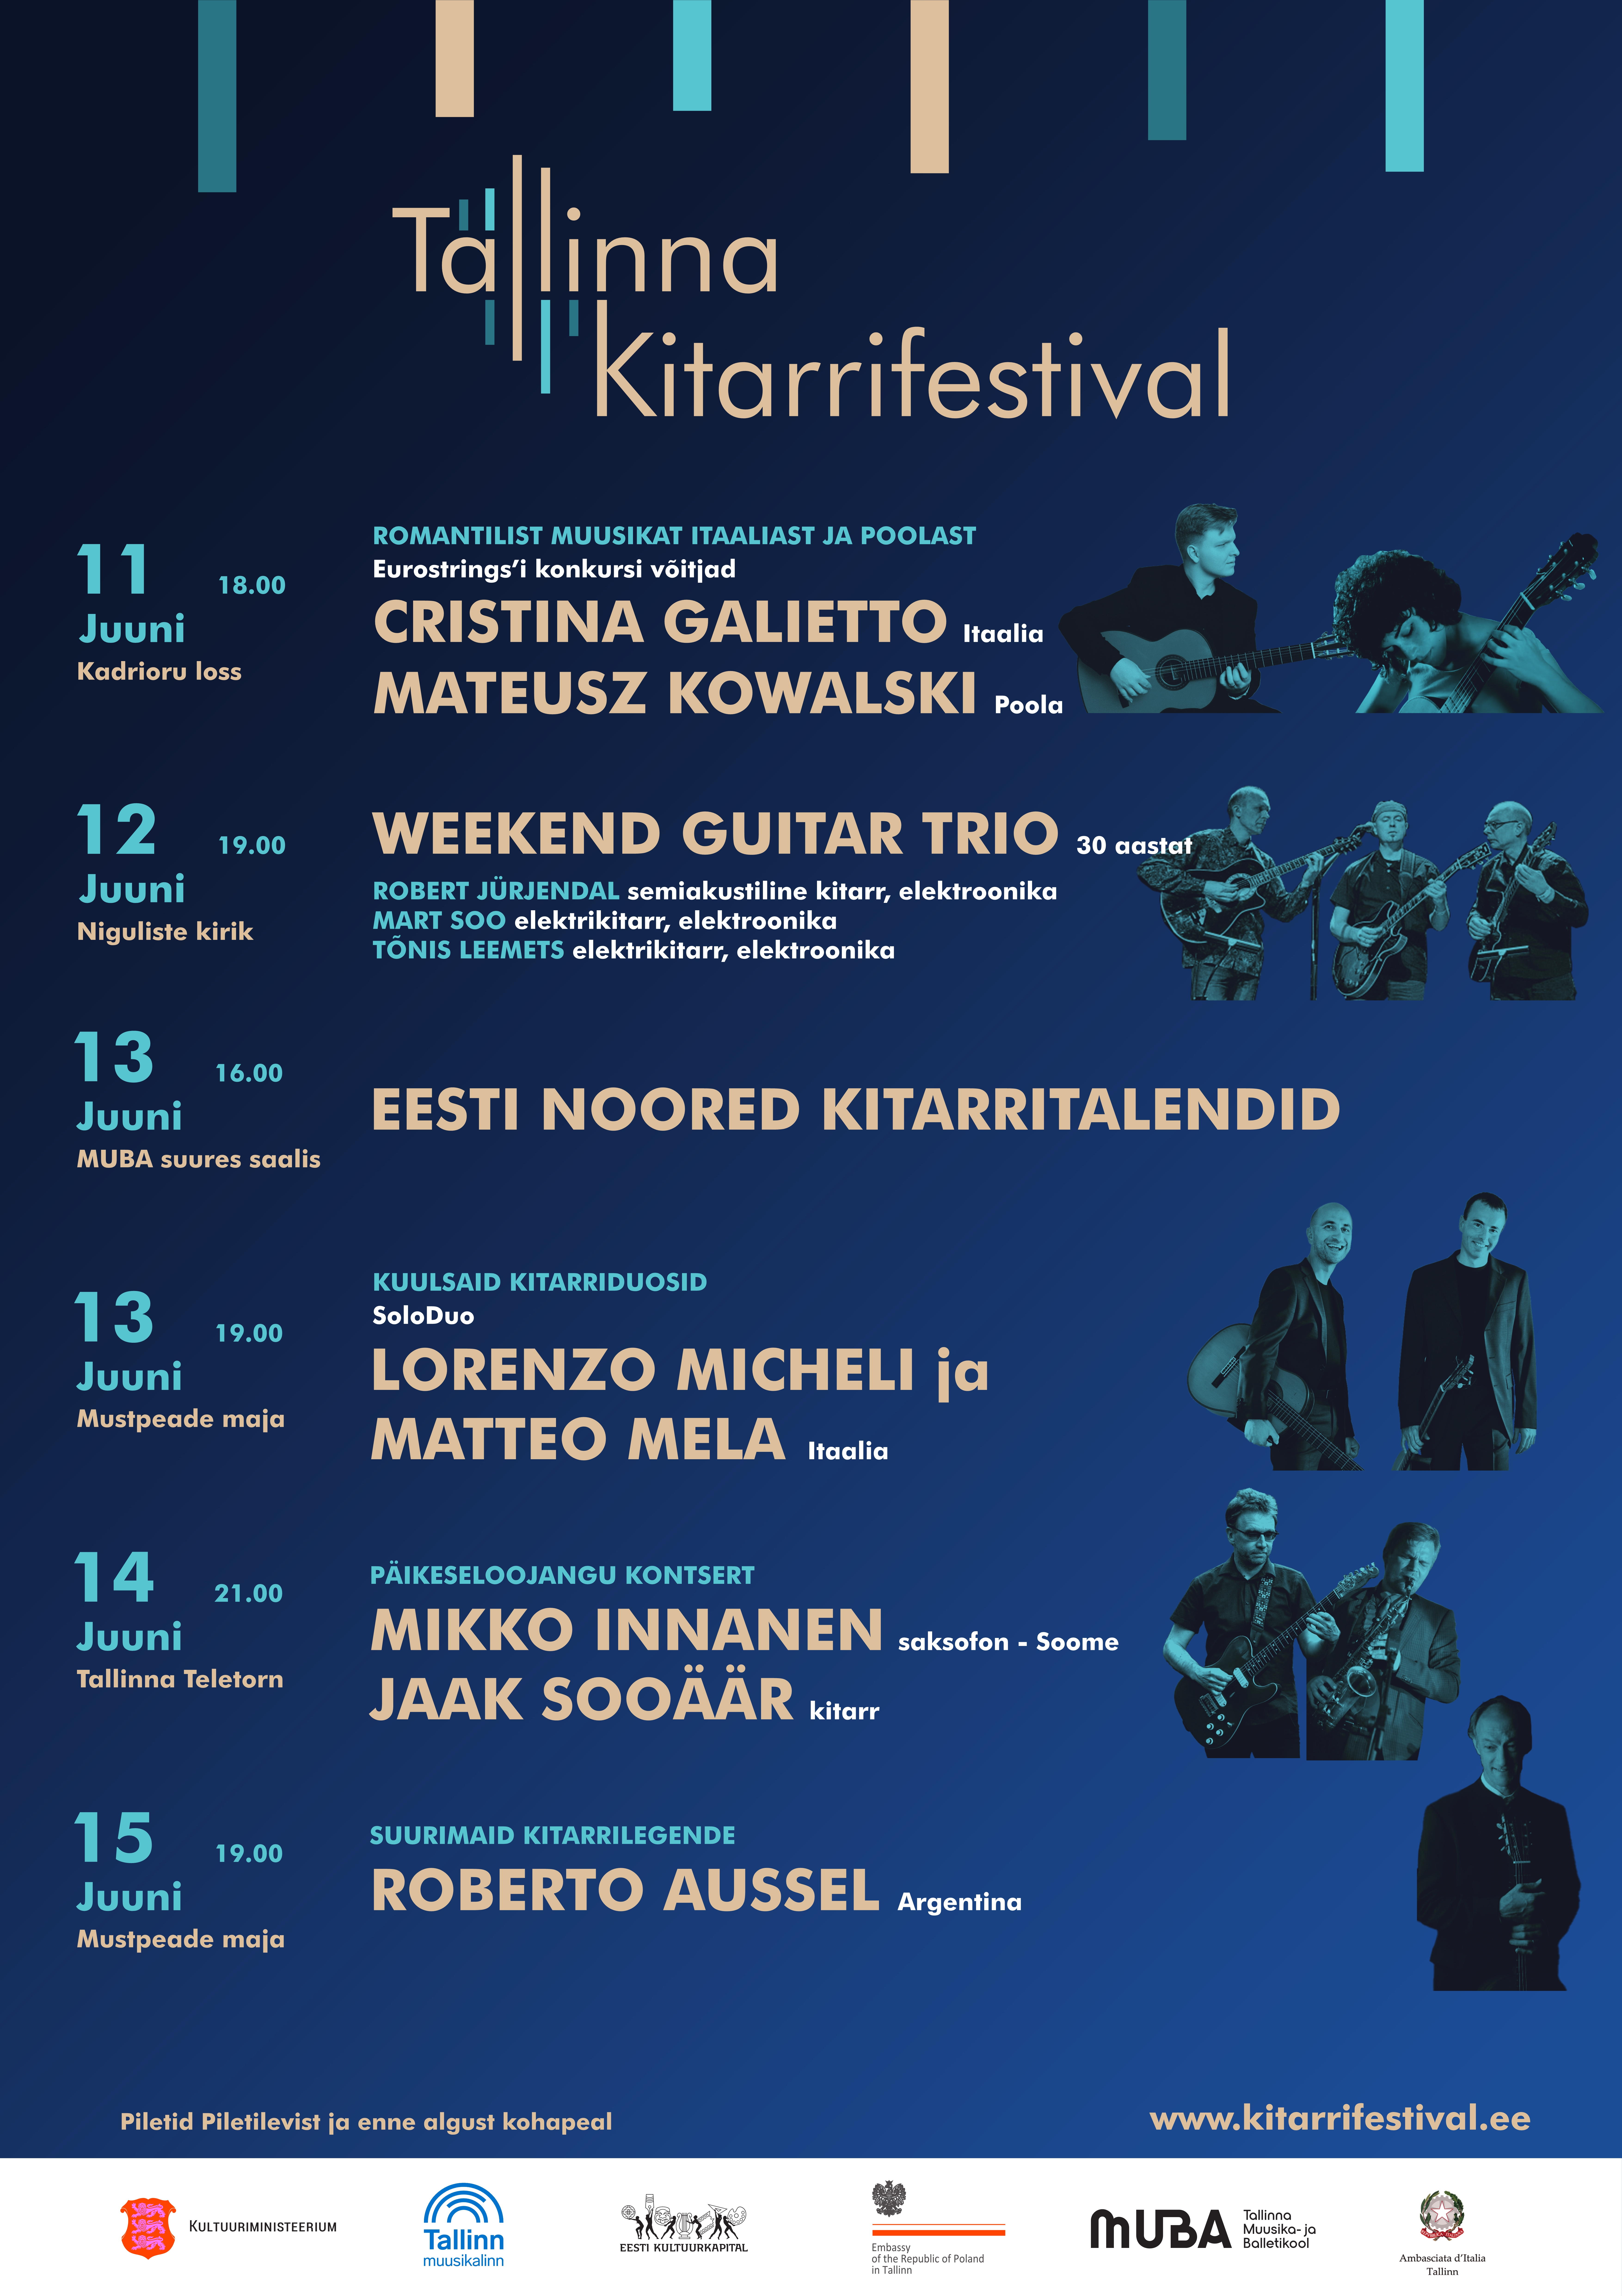 Roberto Aussel (Argentina) / Tallinna kitarrifestival